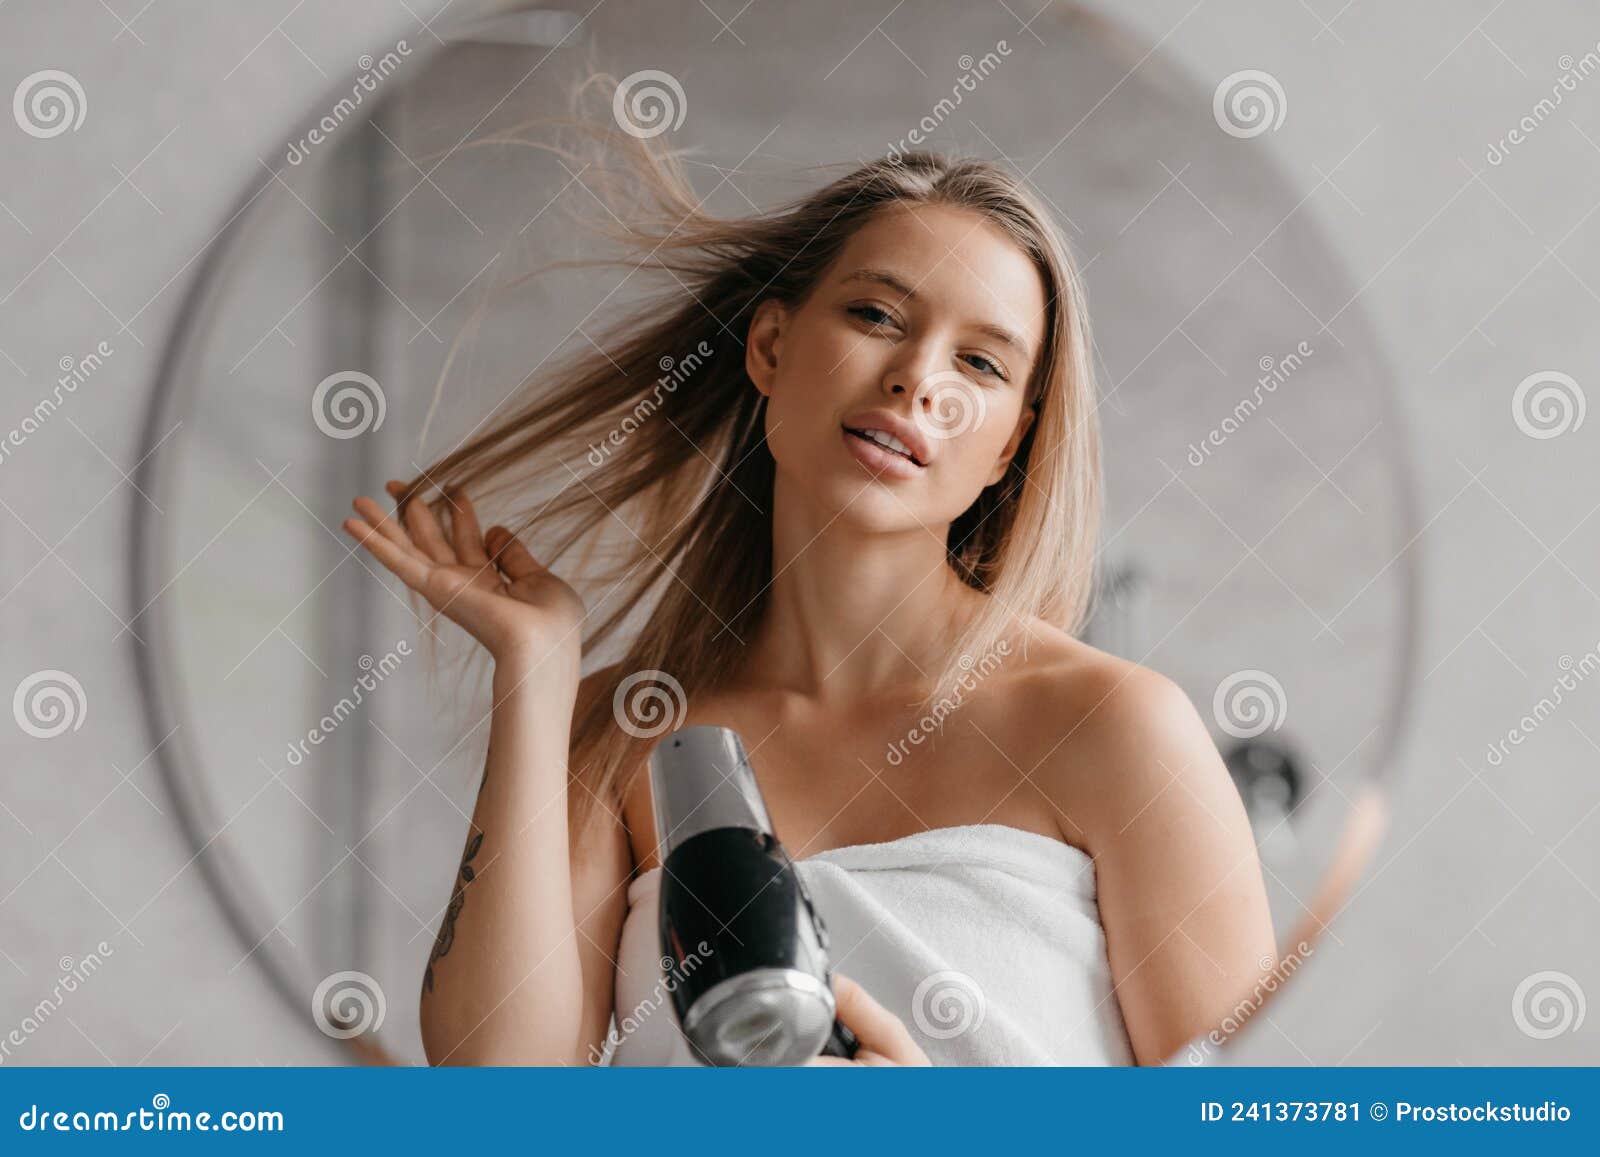 Cabeleireiro alegre, mulher posando com um secador de cabelo nas